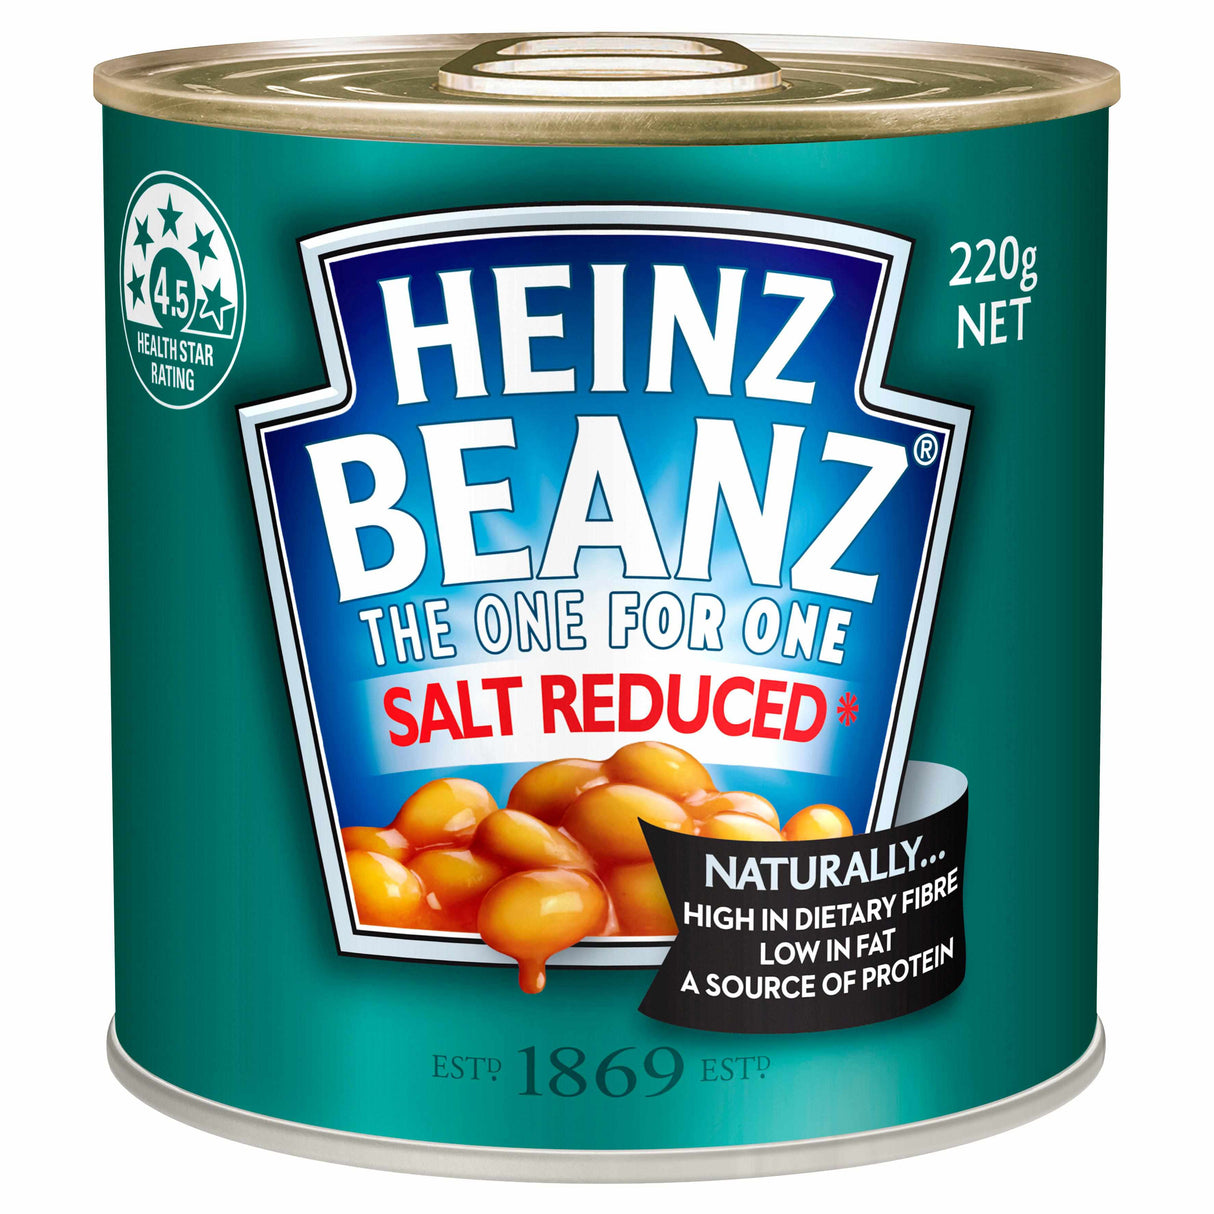 Heinz Beanz Salt Reduced 220g